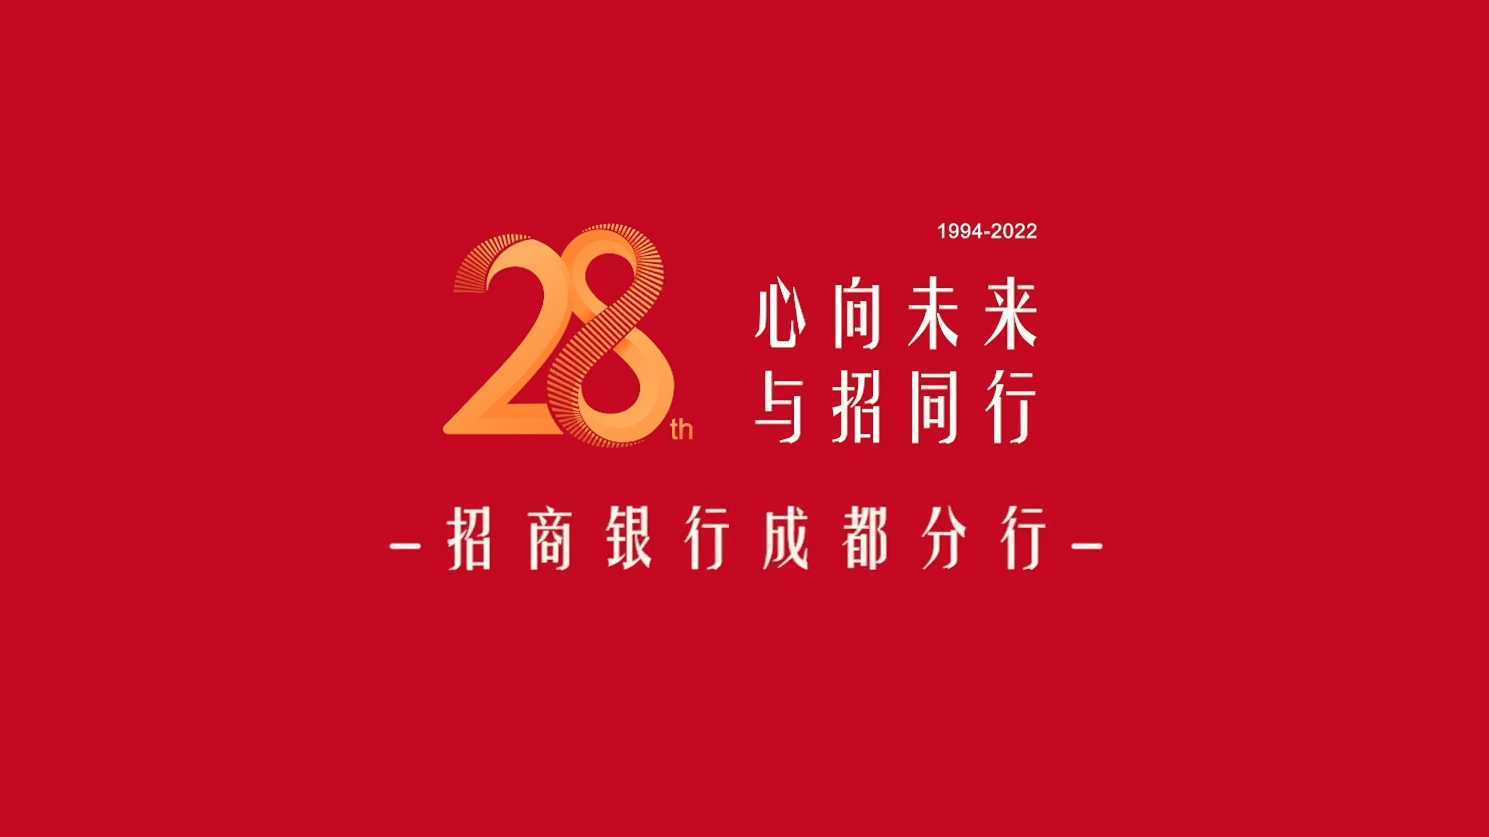 招商银行成都分行 | 28周年宣传片